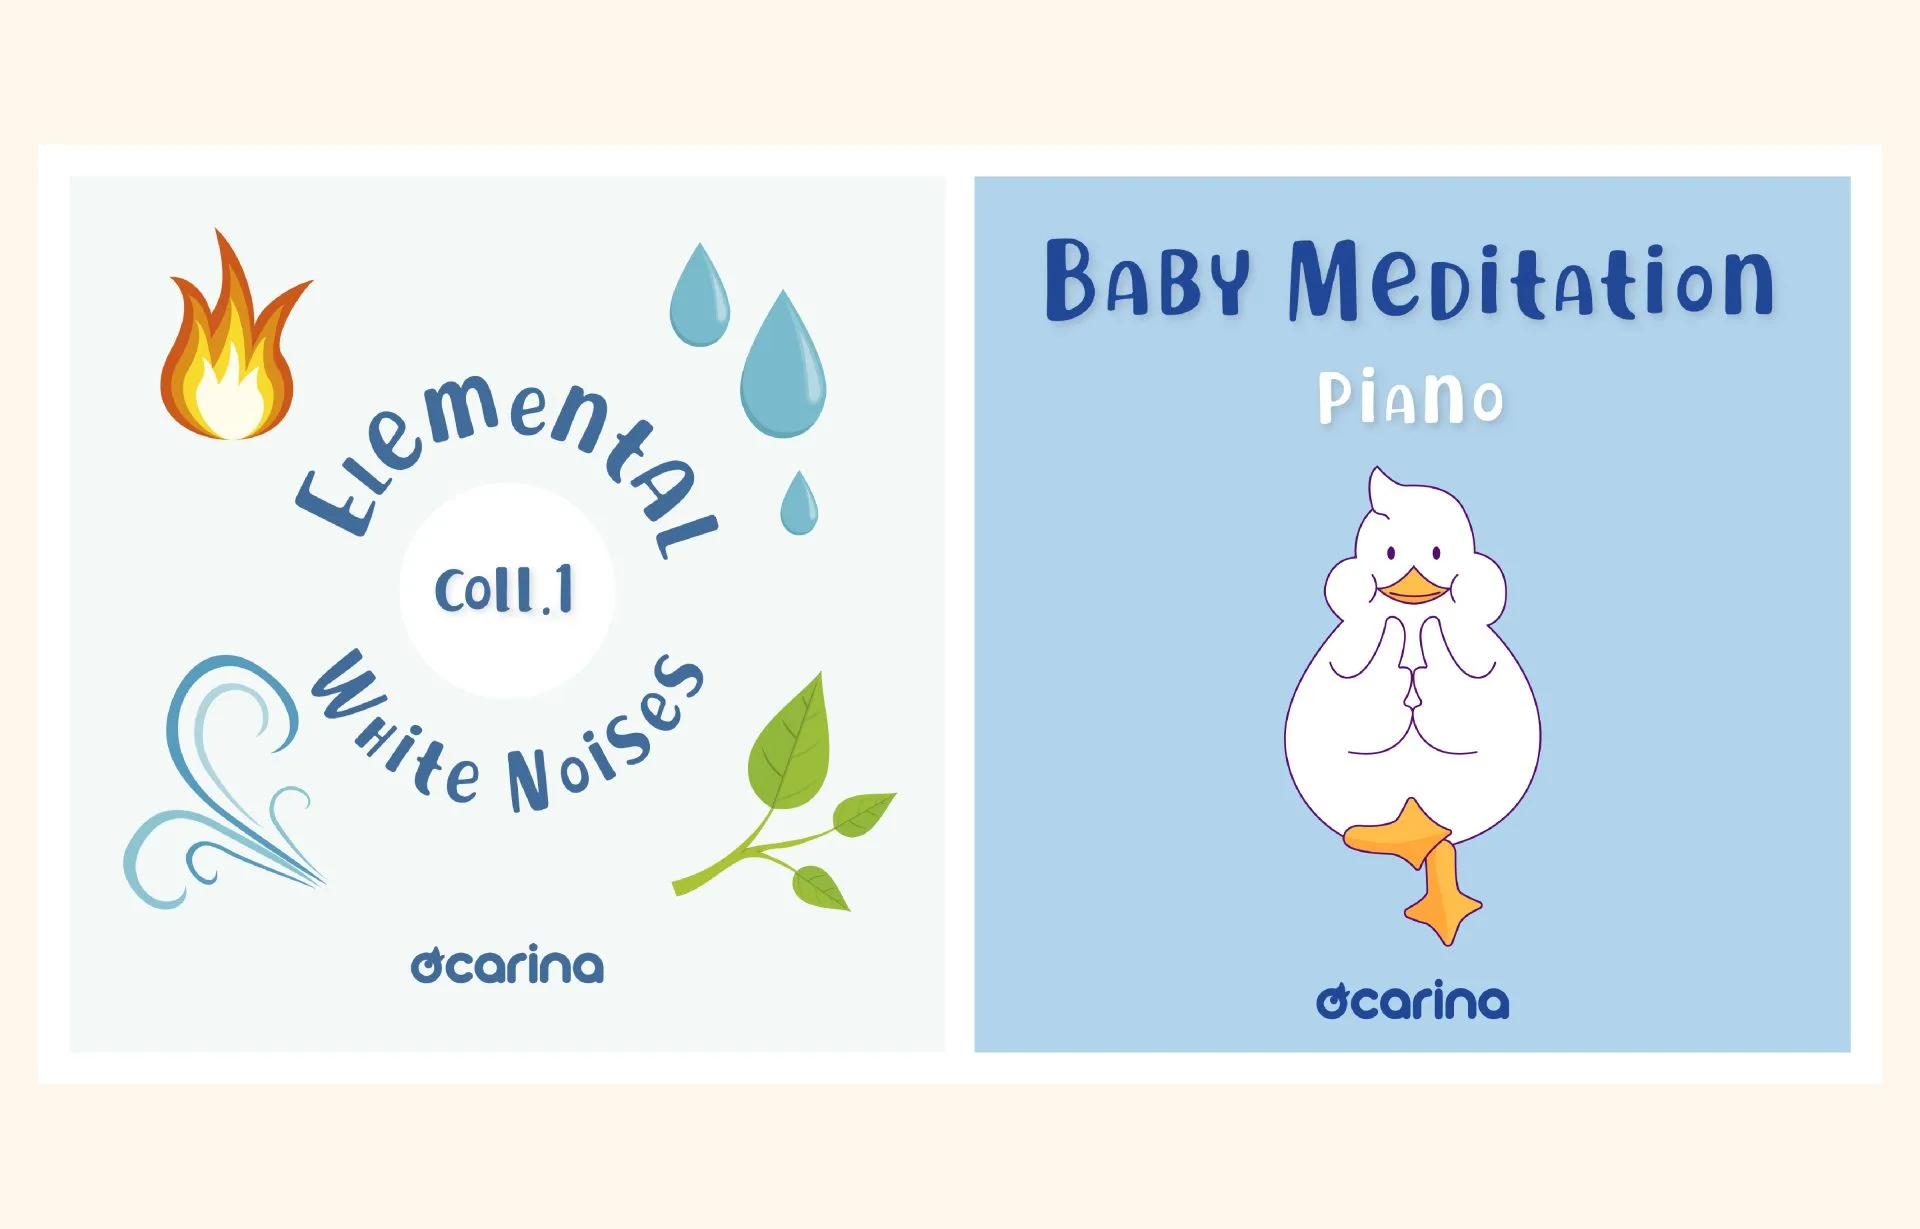 Nouvelles playlists Ocarina pour la détente et le bien-être de vos enfants